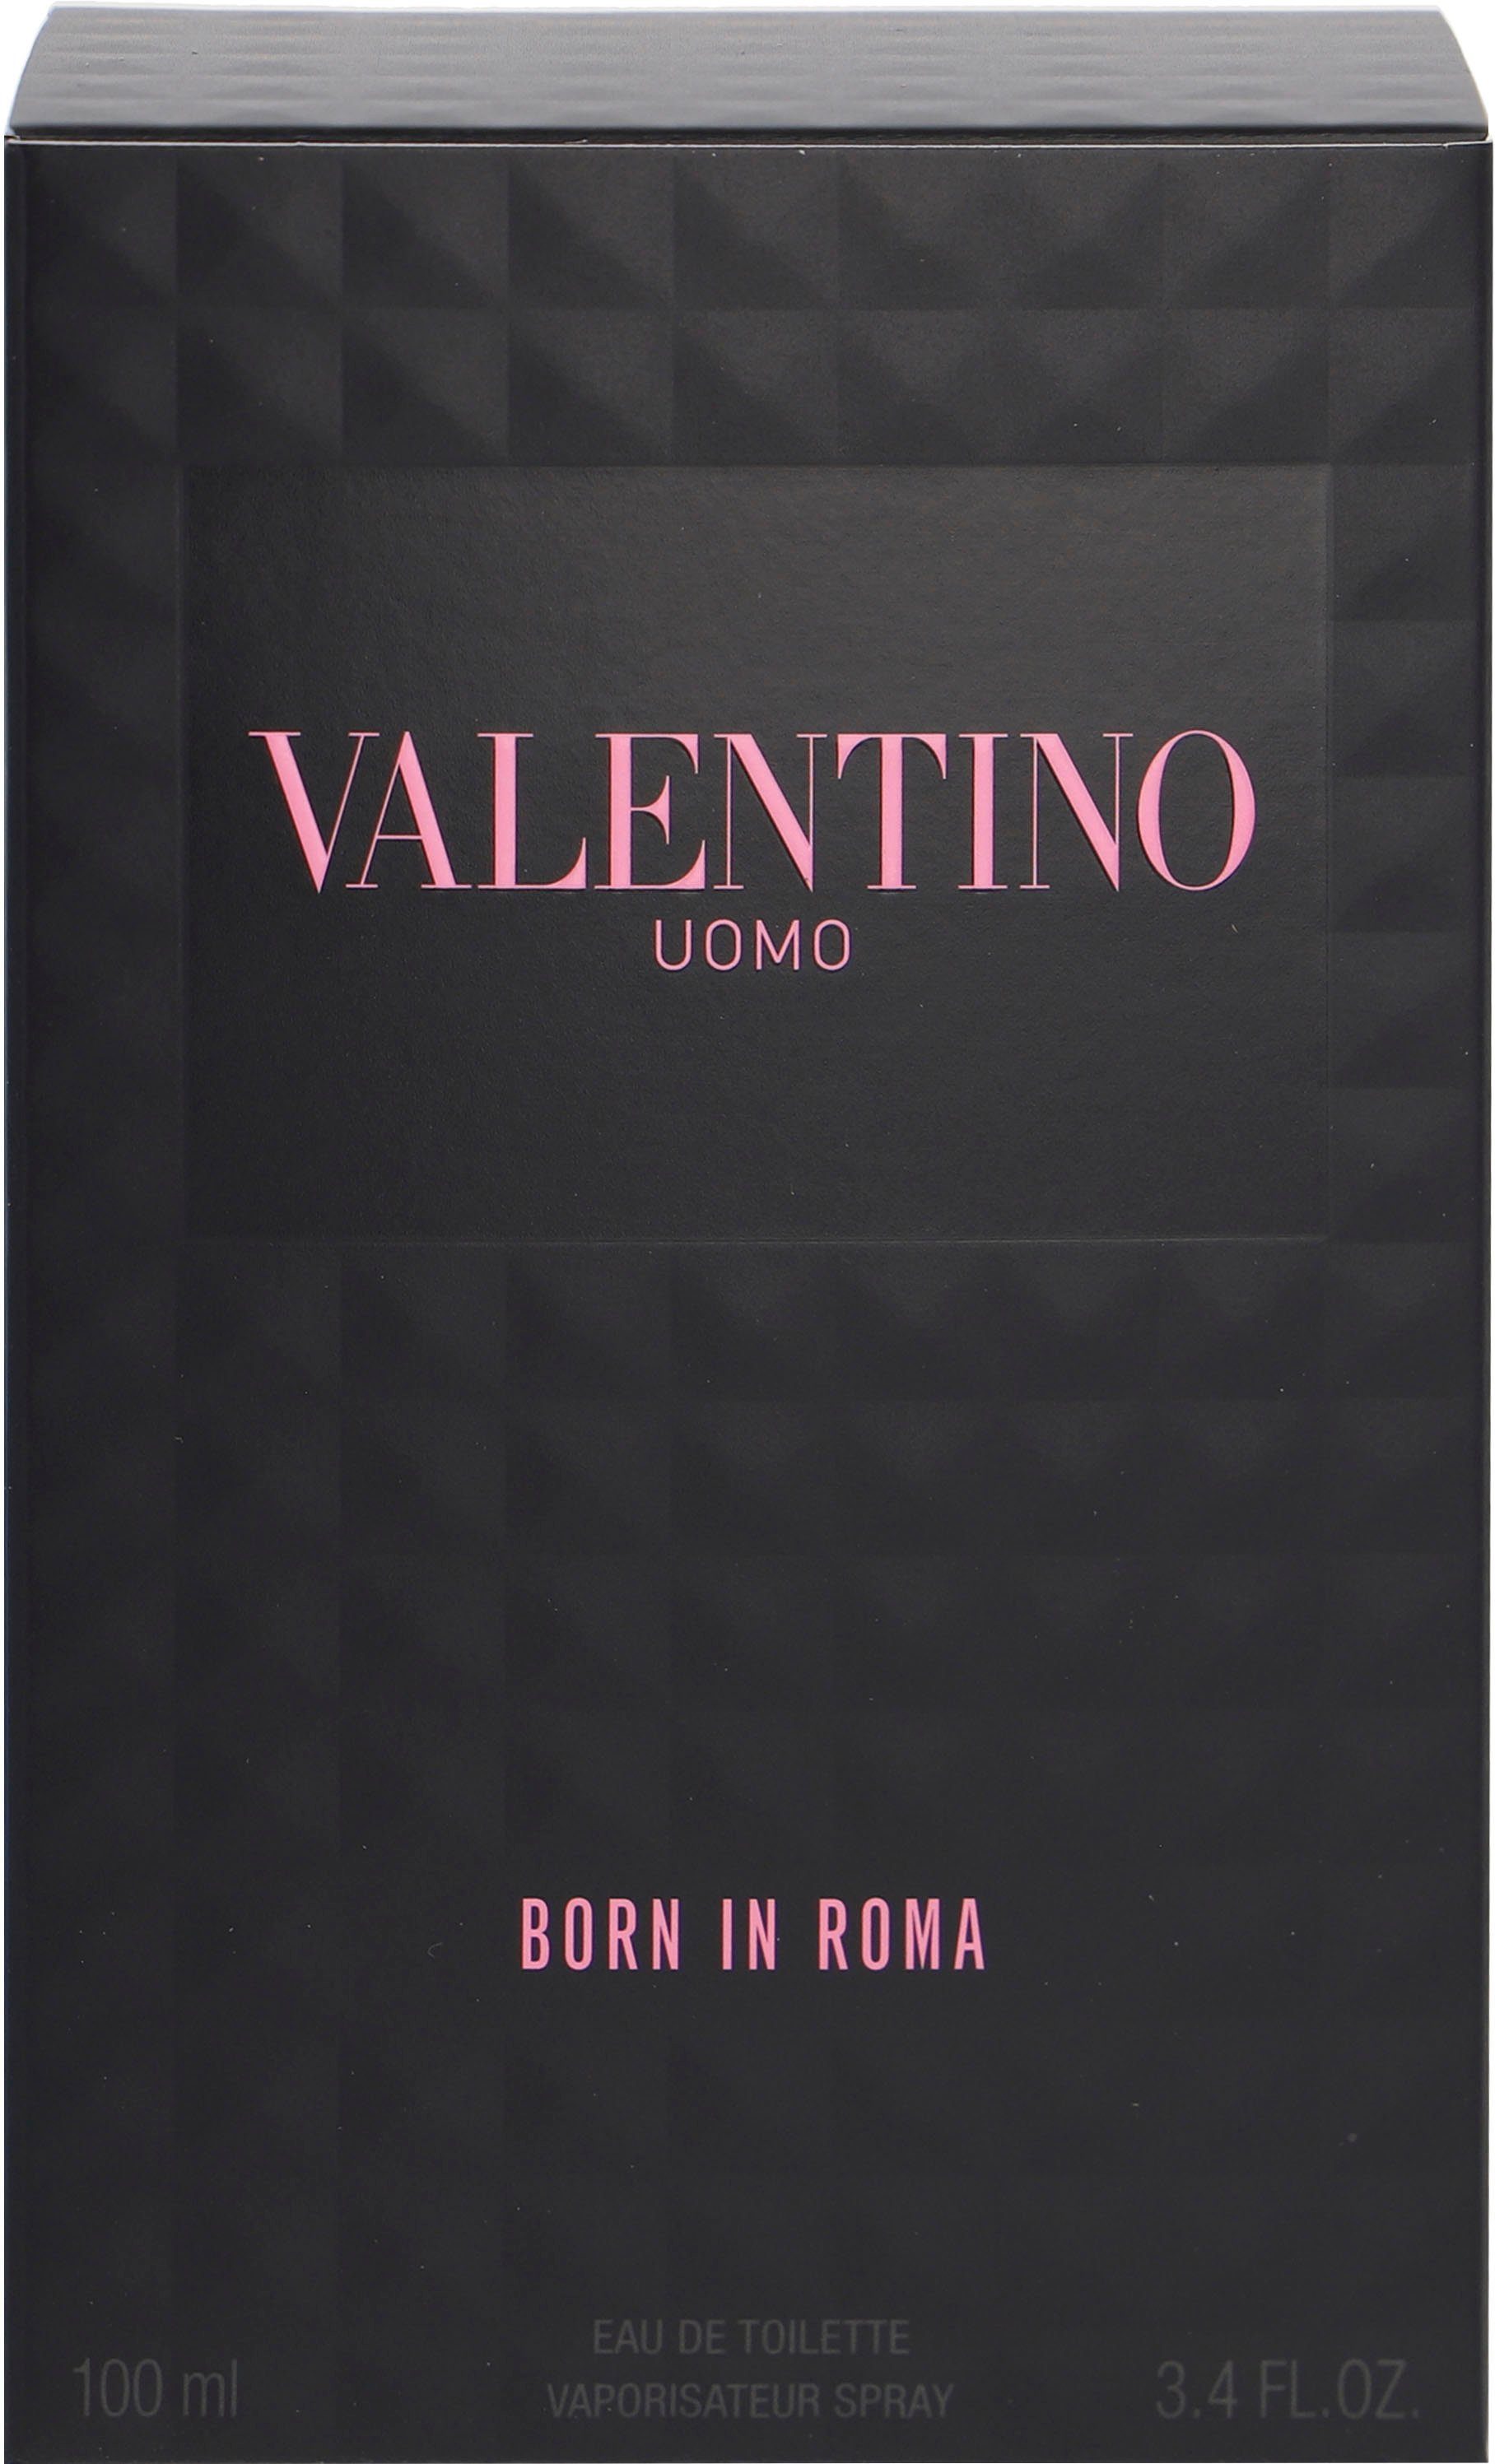 Valentino Eau de Toilette Roma Uomo Born In